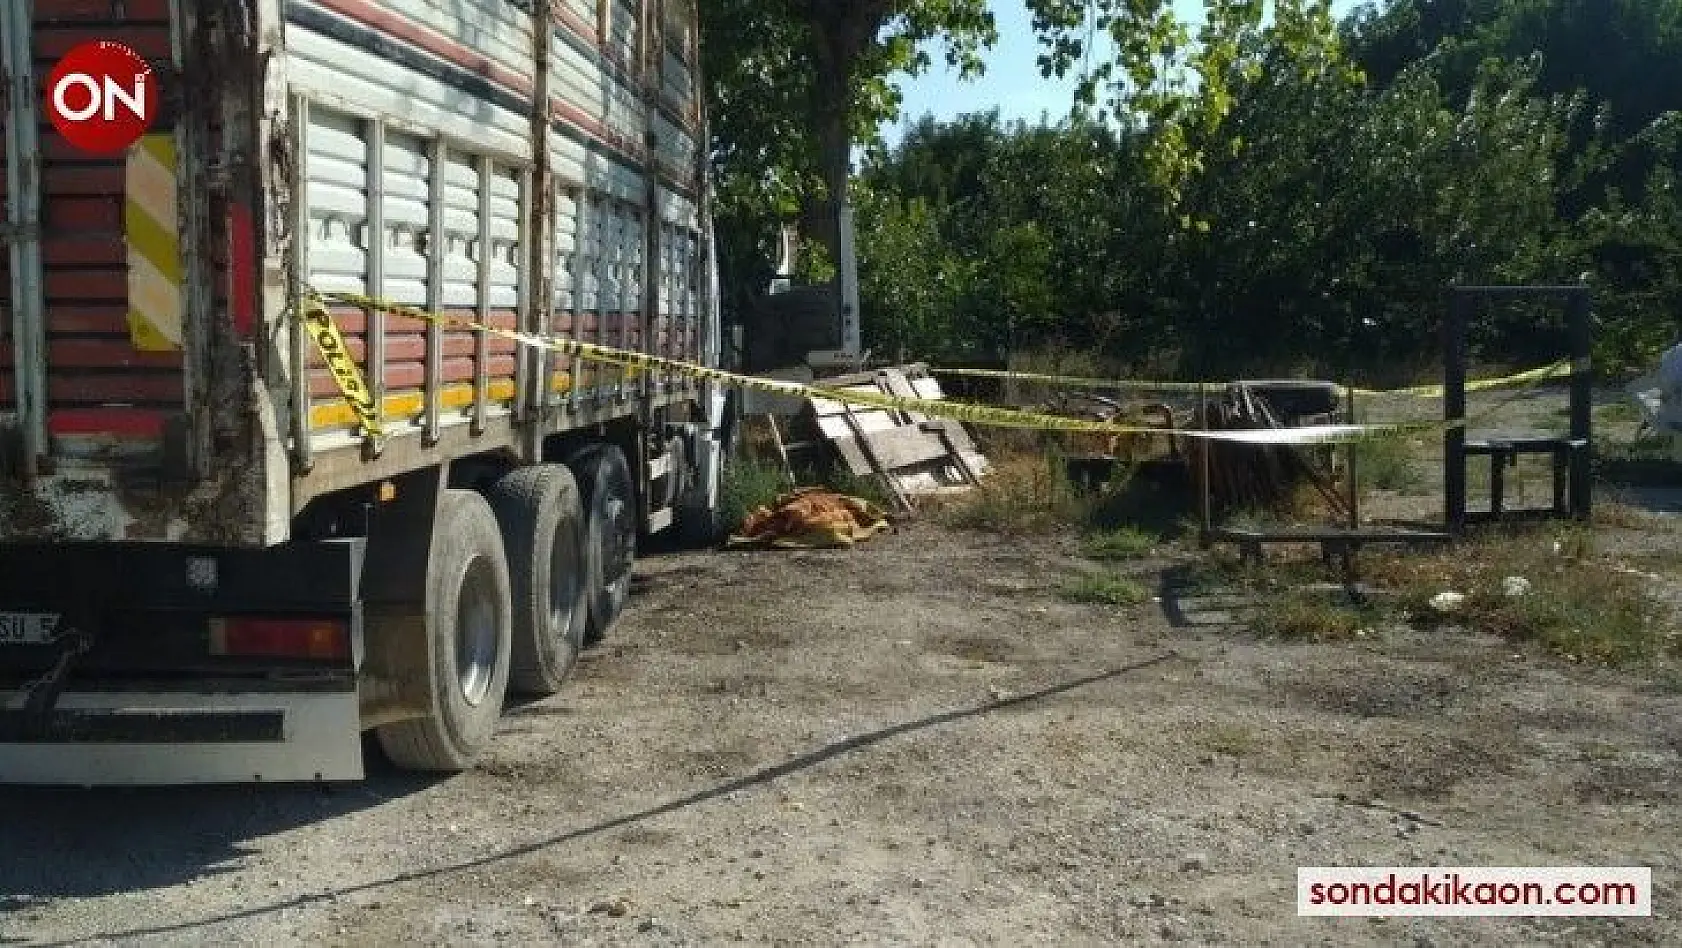 Çocuklarının sünnet davetiyelerini dağıtan kamyon şoförünün cesedi bulundu